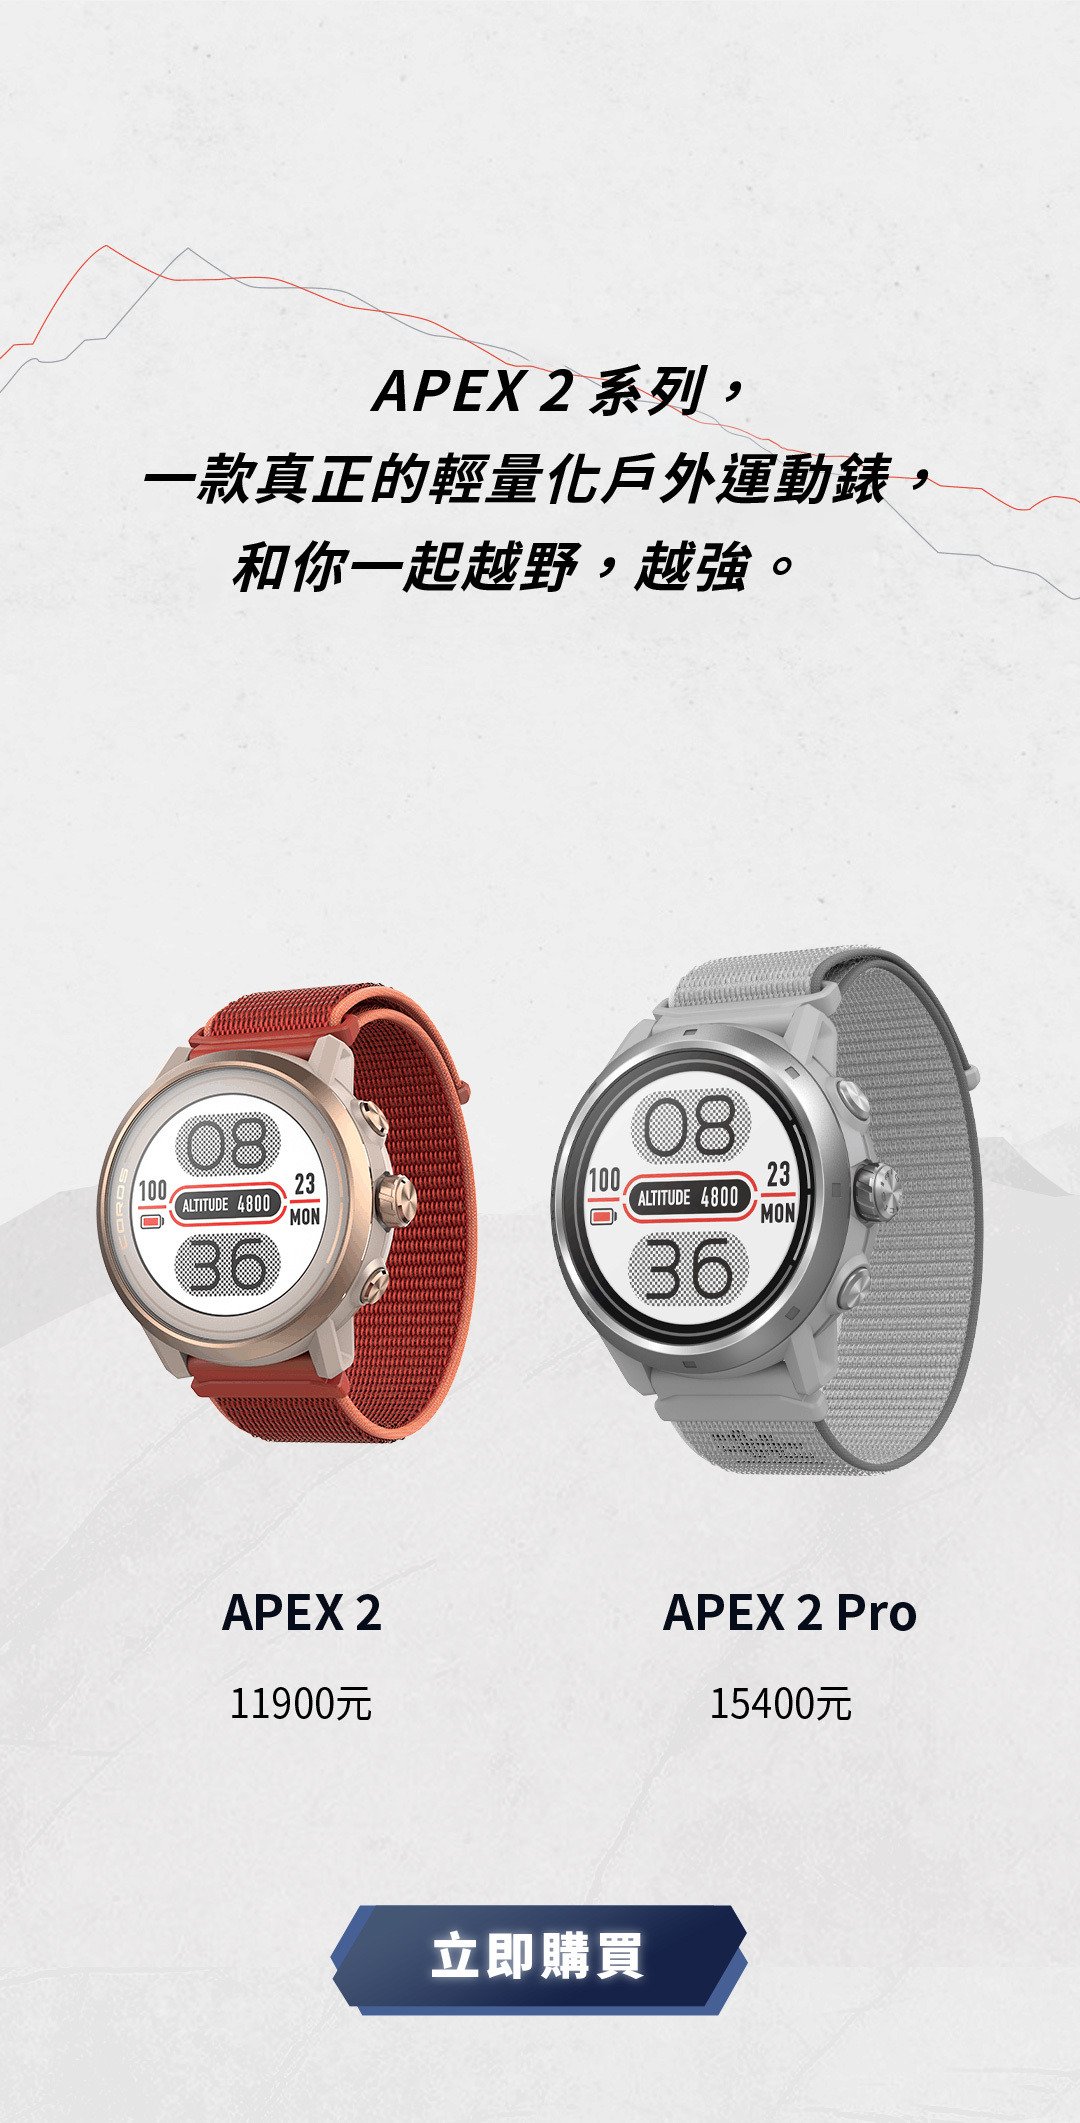 APEX 2系列， 一款真正的輕量化戶外運動錶， 和你一起越野，越強。